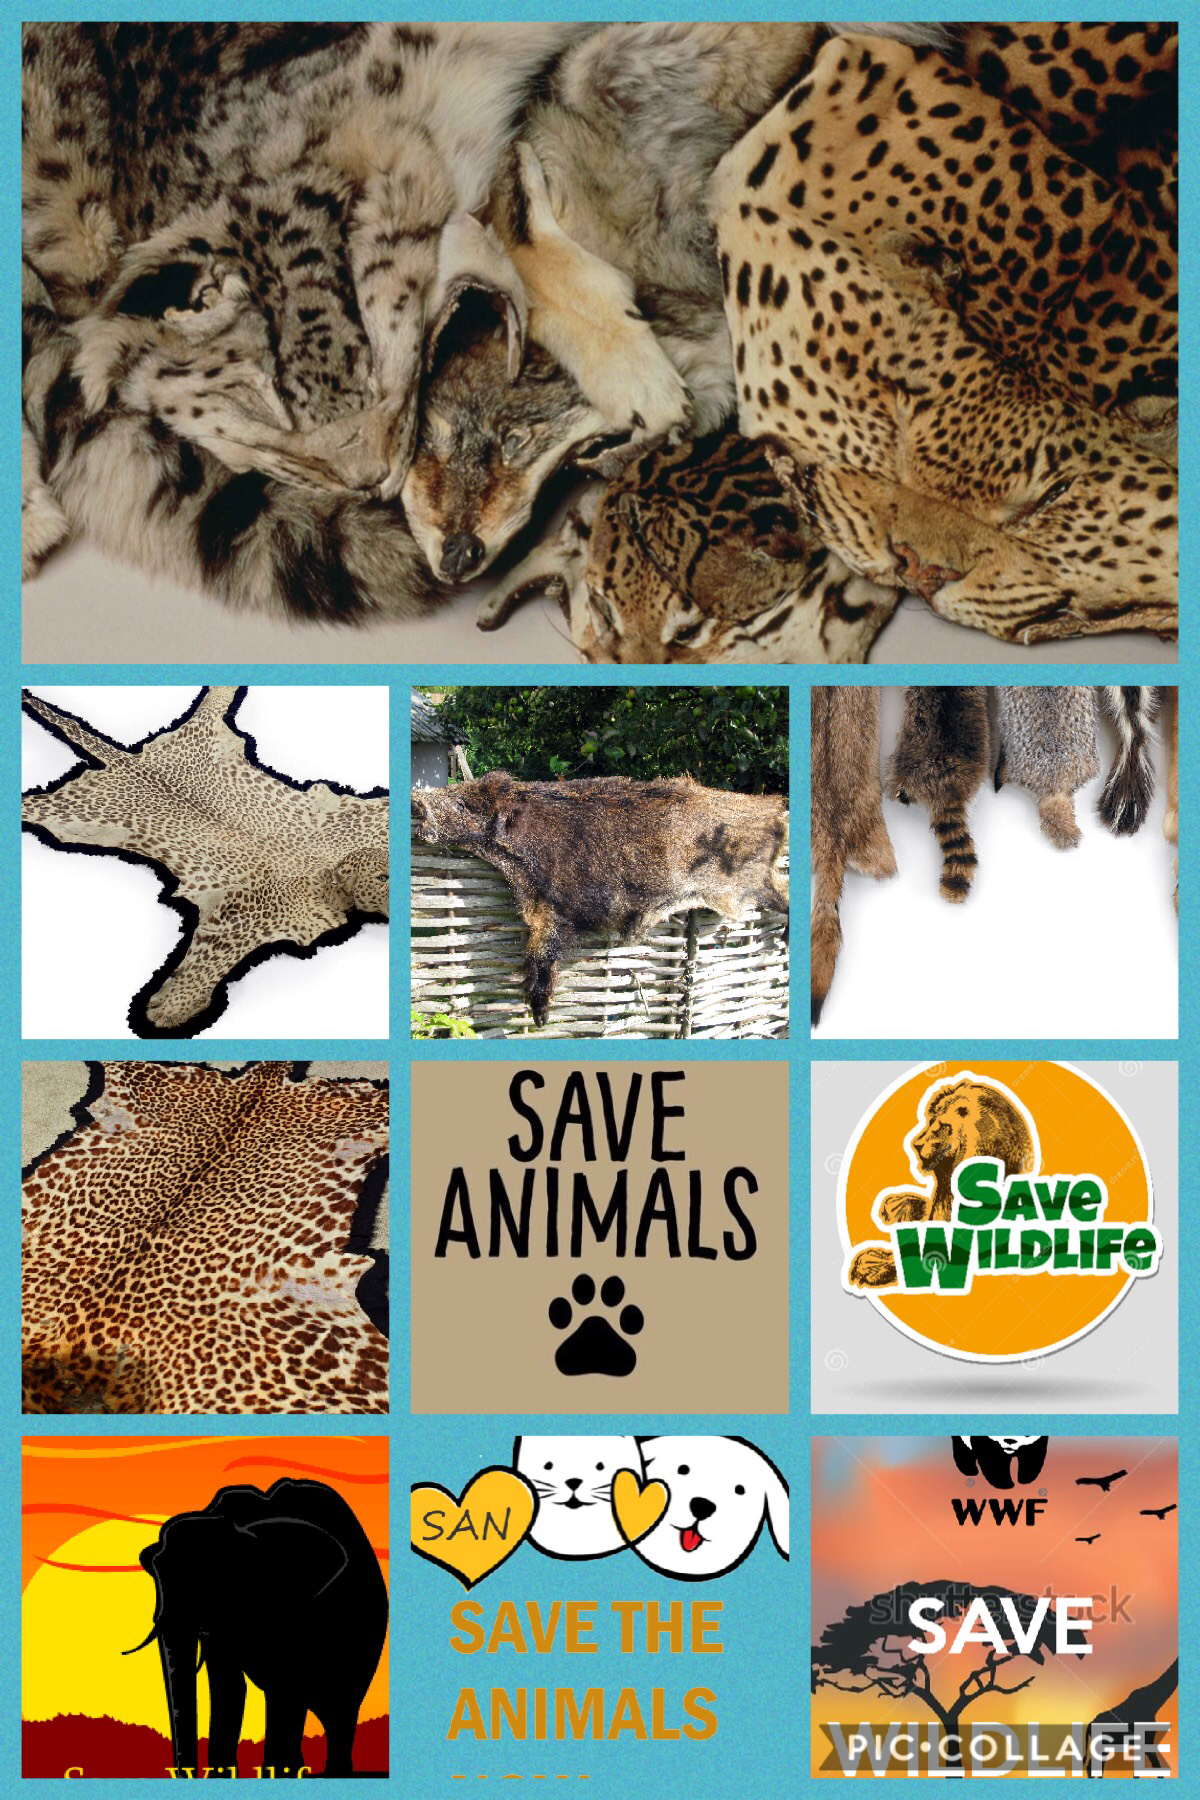 Save wildlife 
